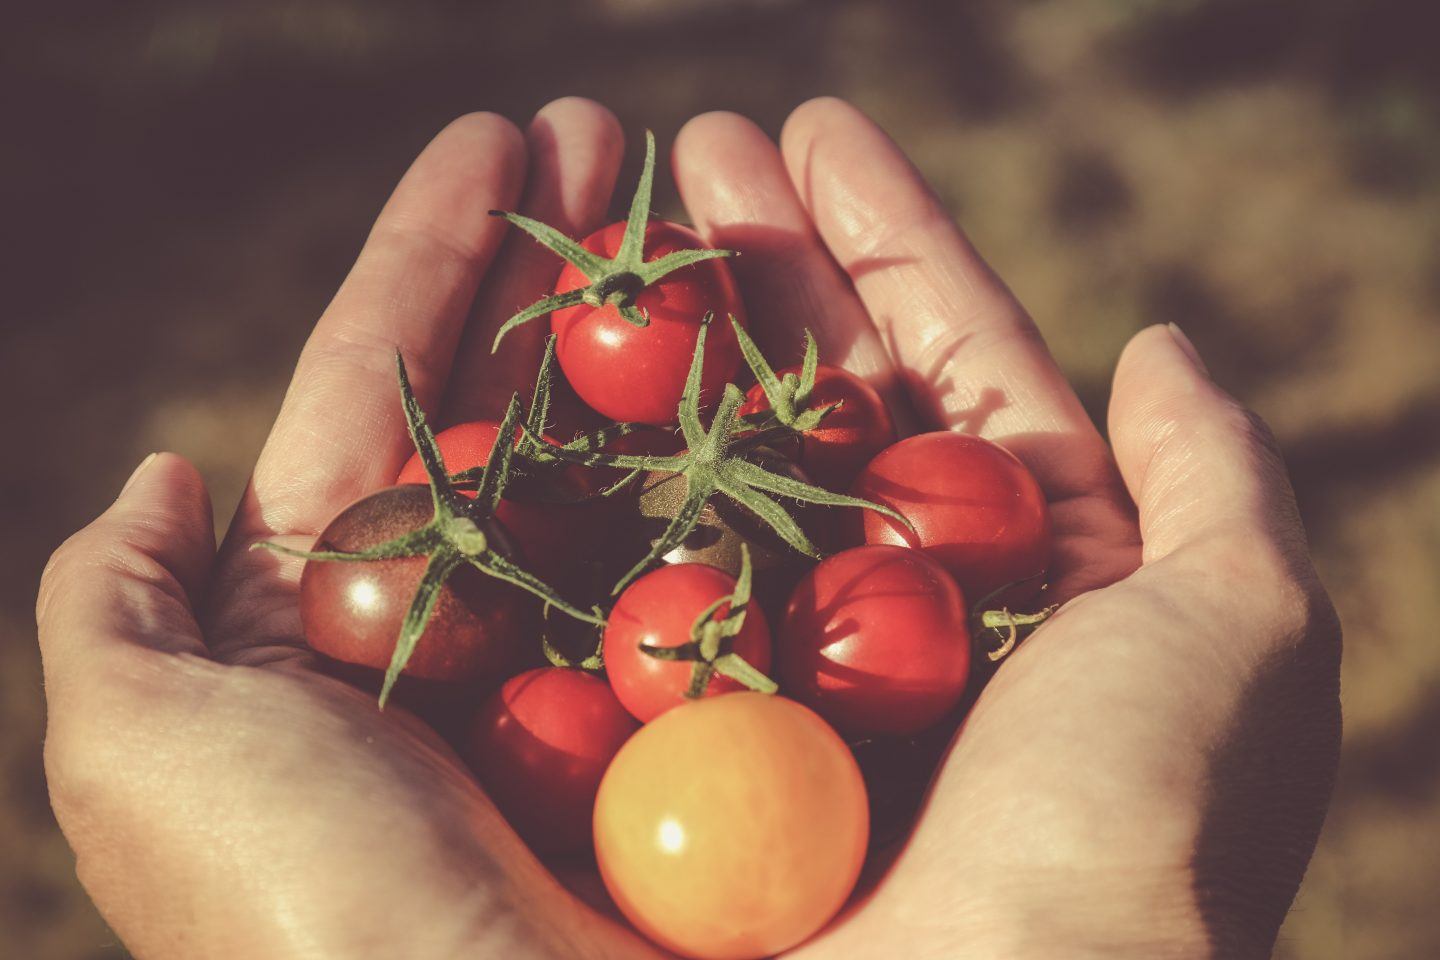 Dlaczego warto jeść pomidory? Właściwości zdrowotne i składniki odżywcze pomidora